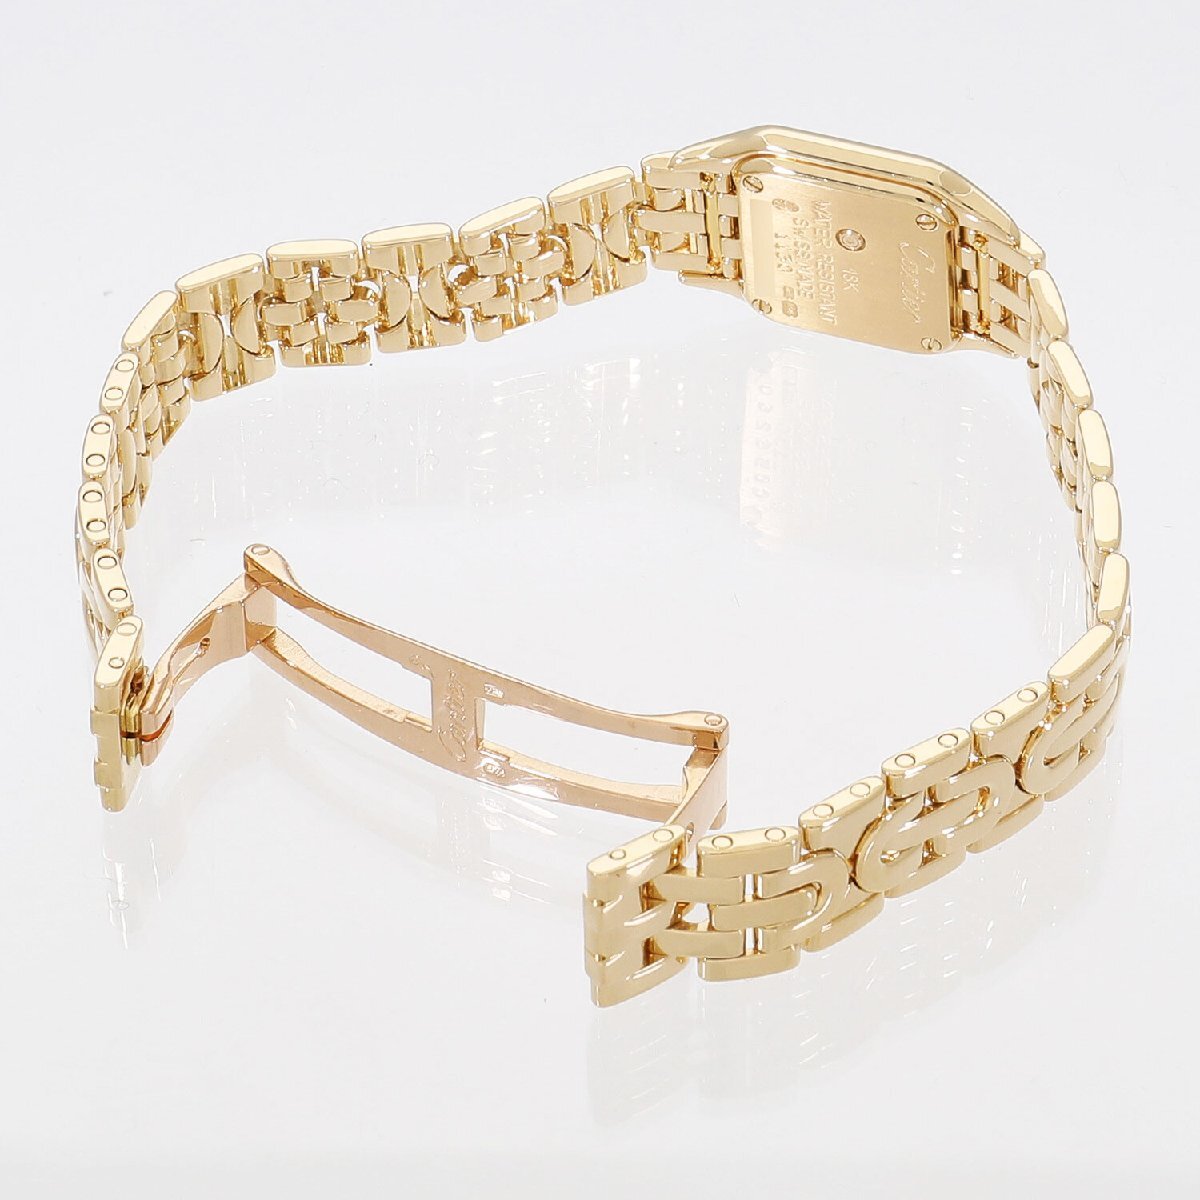  Cartier Mini хлеб te- искусственная приманка ru декоративный элемент W25034N3 серебряный женский б/у бесплатная доставка наручные часы 